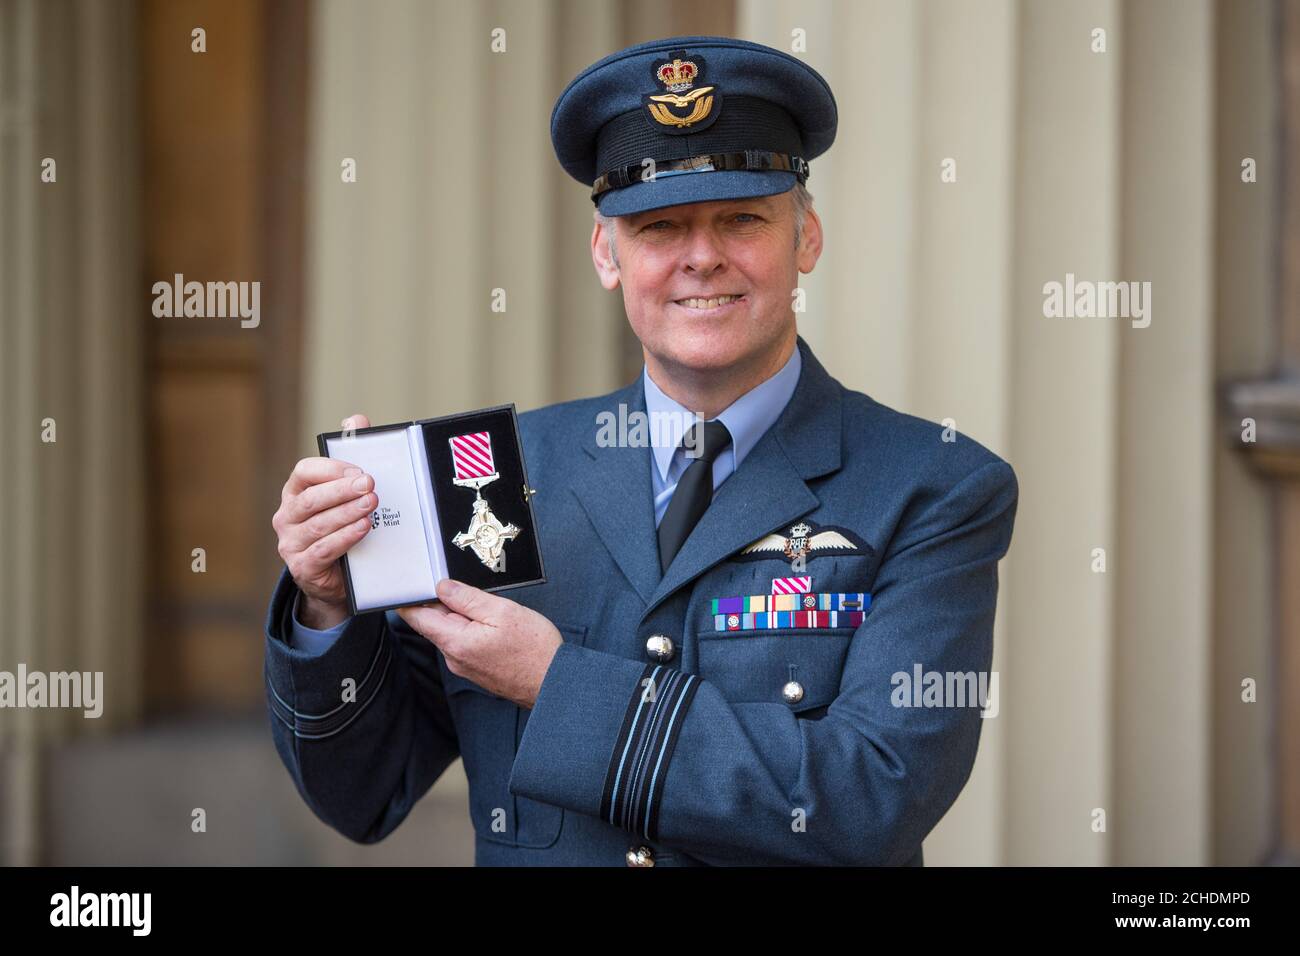 Ian Dornan, chef de l'escadron, et sa médaille de la Croix de la Force aérienne, décernée lors d'une cérémonie d'investiture au Palais de Buckingham, à Londres. Banque D'Images